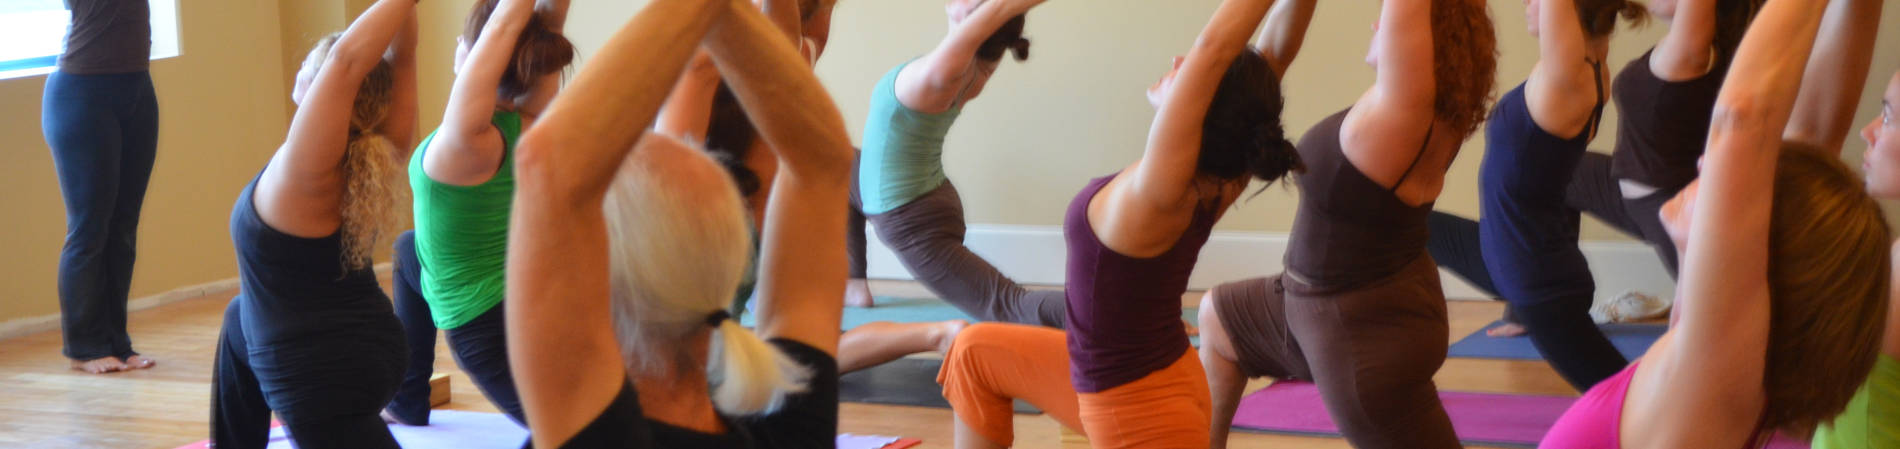 Lezioni di yoga a domicilio